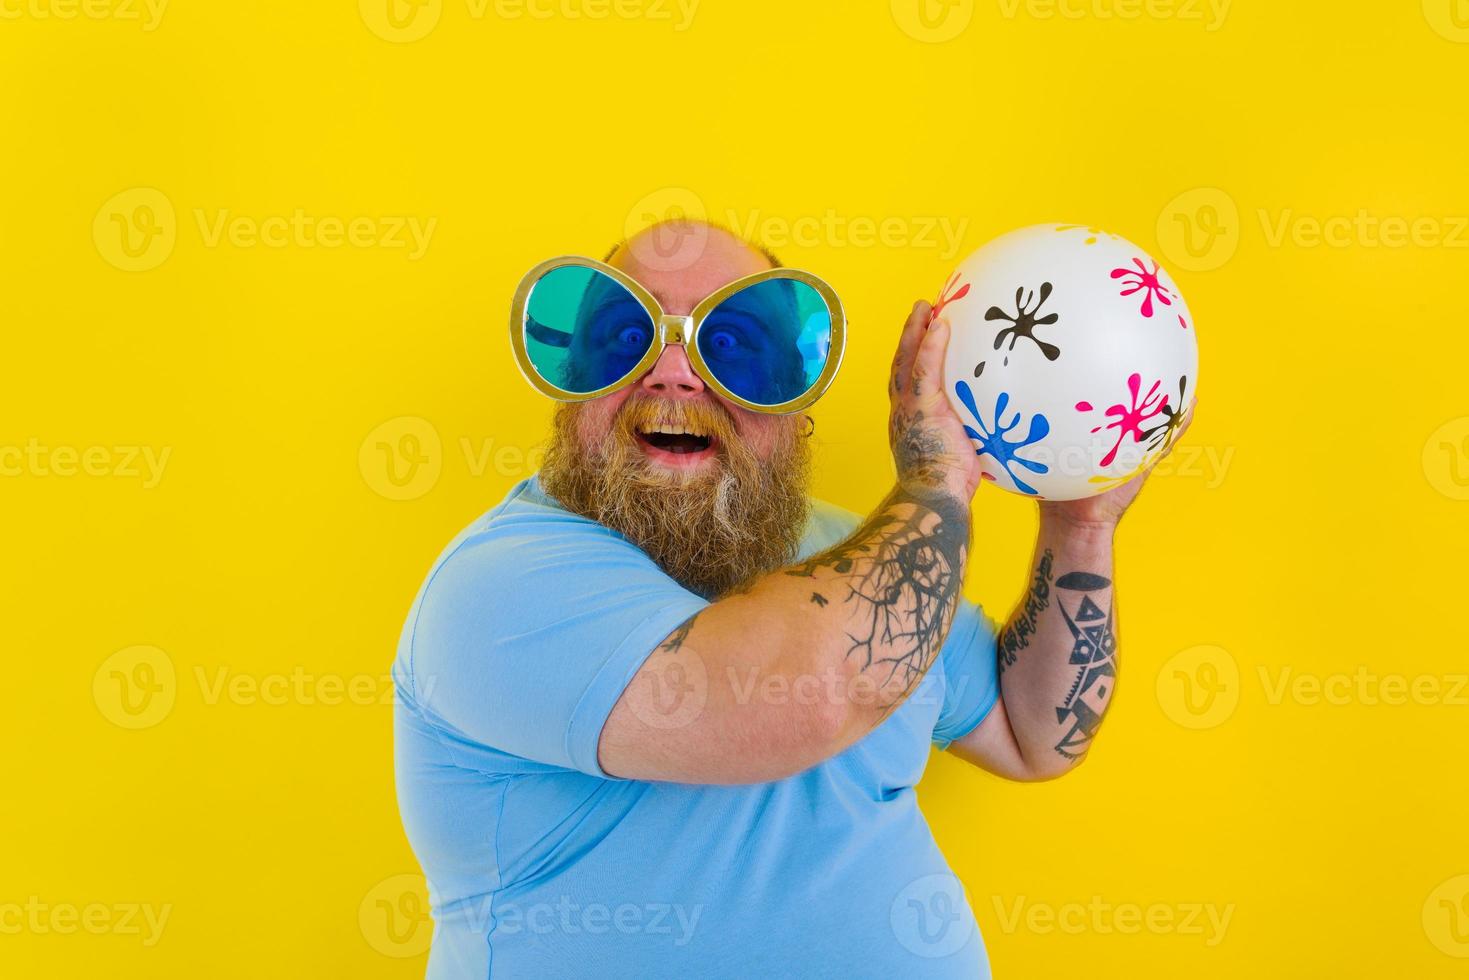 gordo homem com barba e oculos de sol ter Diversão com uma bola foto